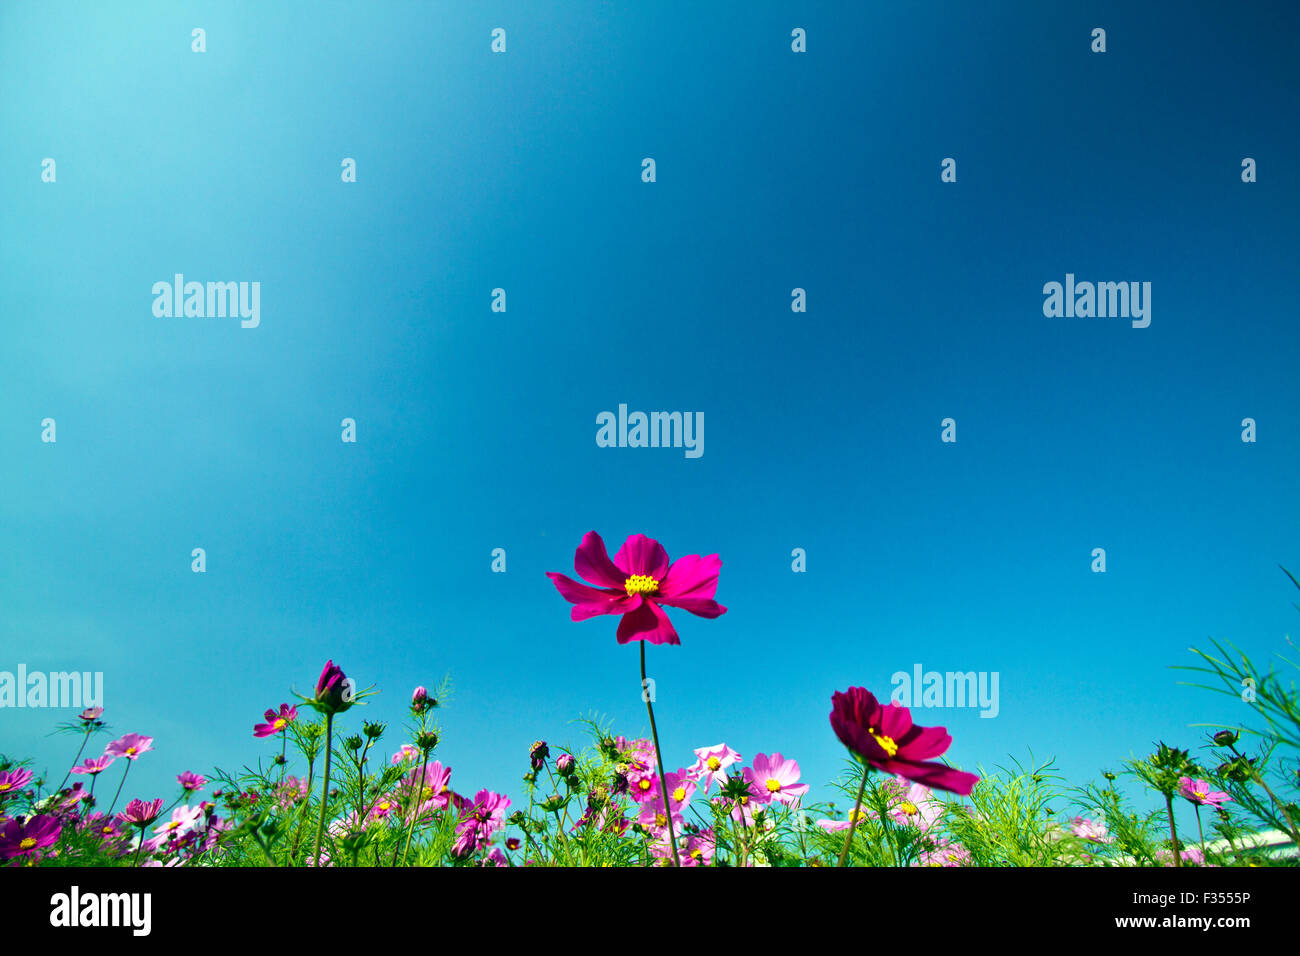 Beau Champ de fleurs bloom groupe Cosmos bipinnatus contre ciel bleu clair Banque D'Images